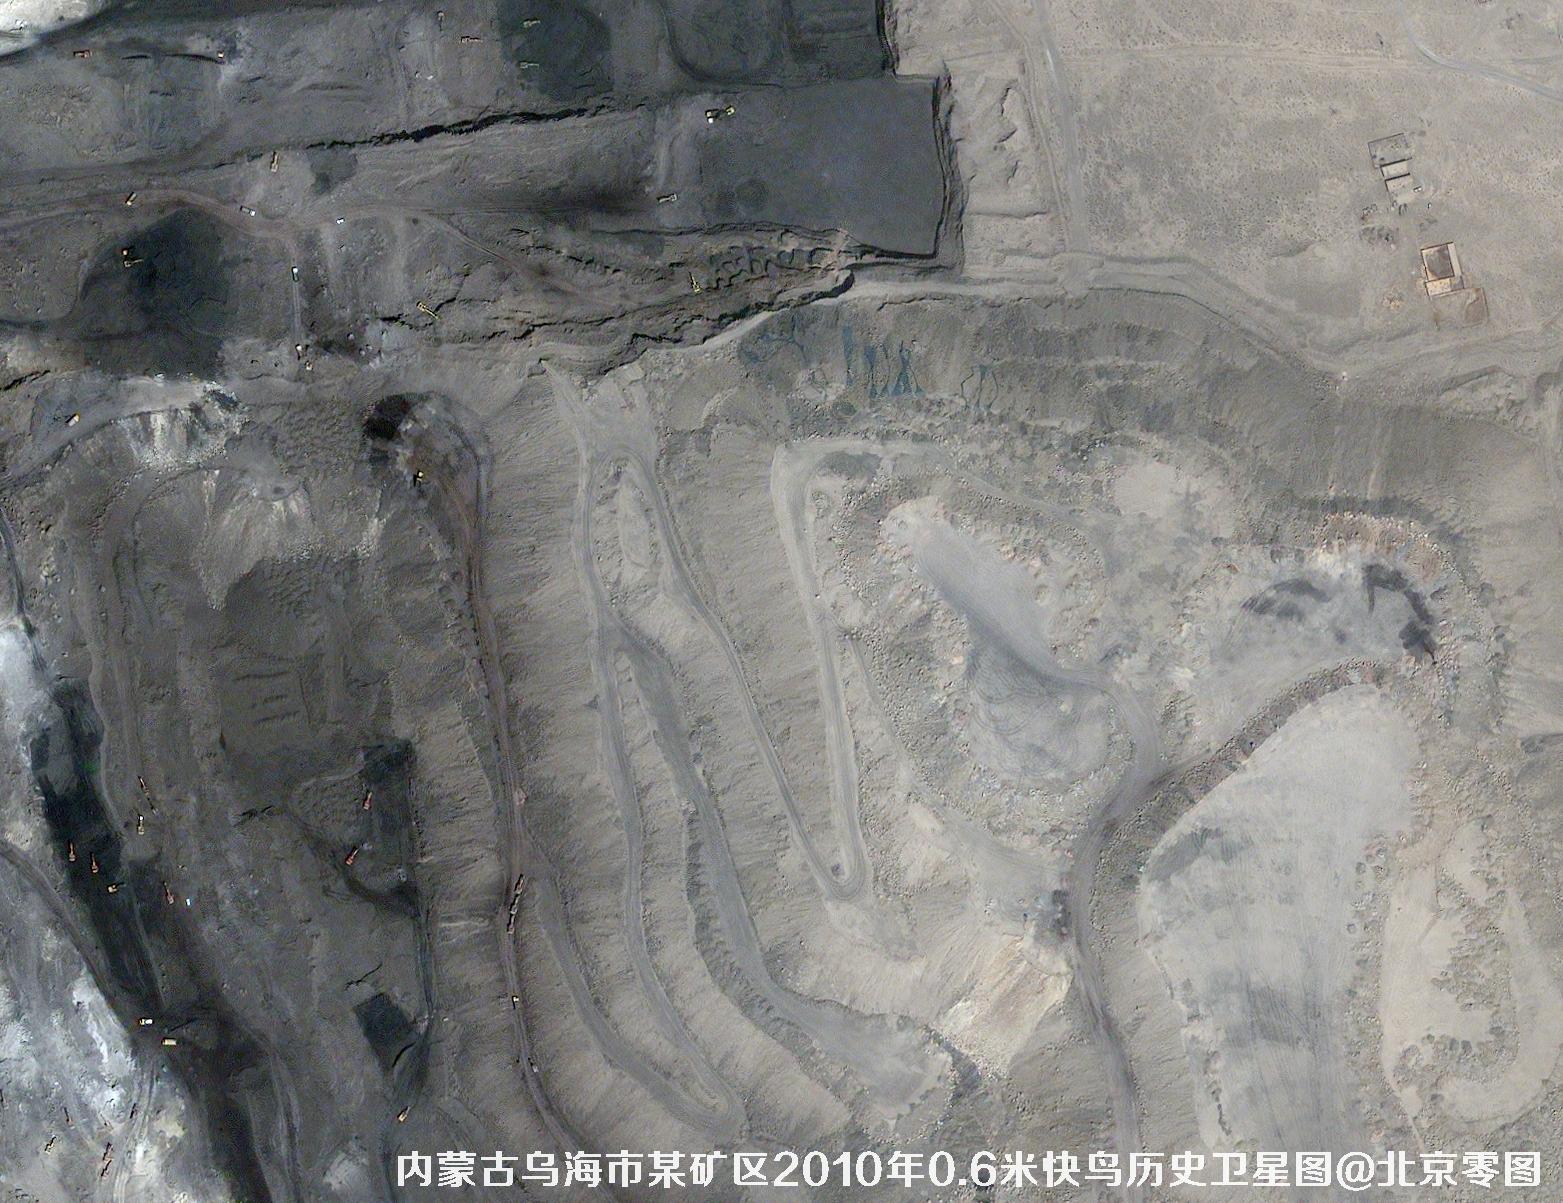 内蒙古乌海市某矿区2010年0.6米快鸟卫星图